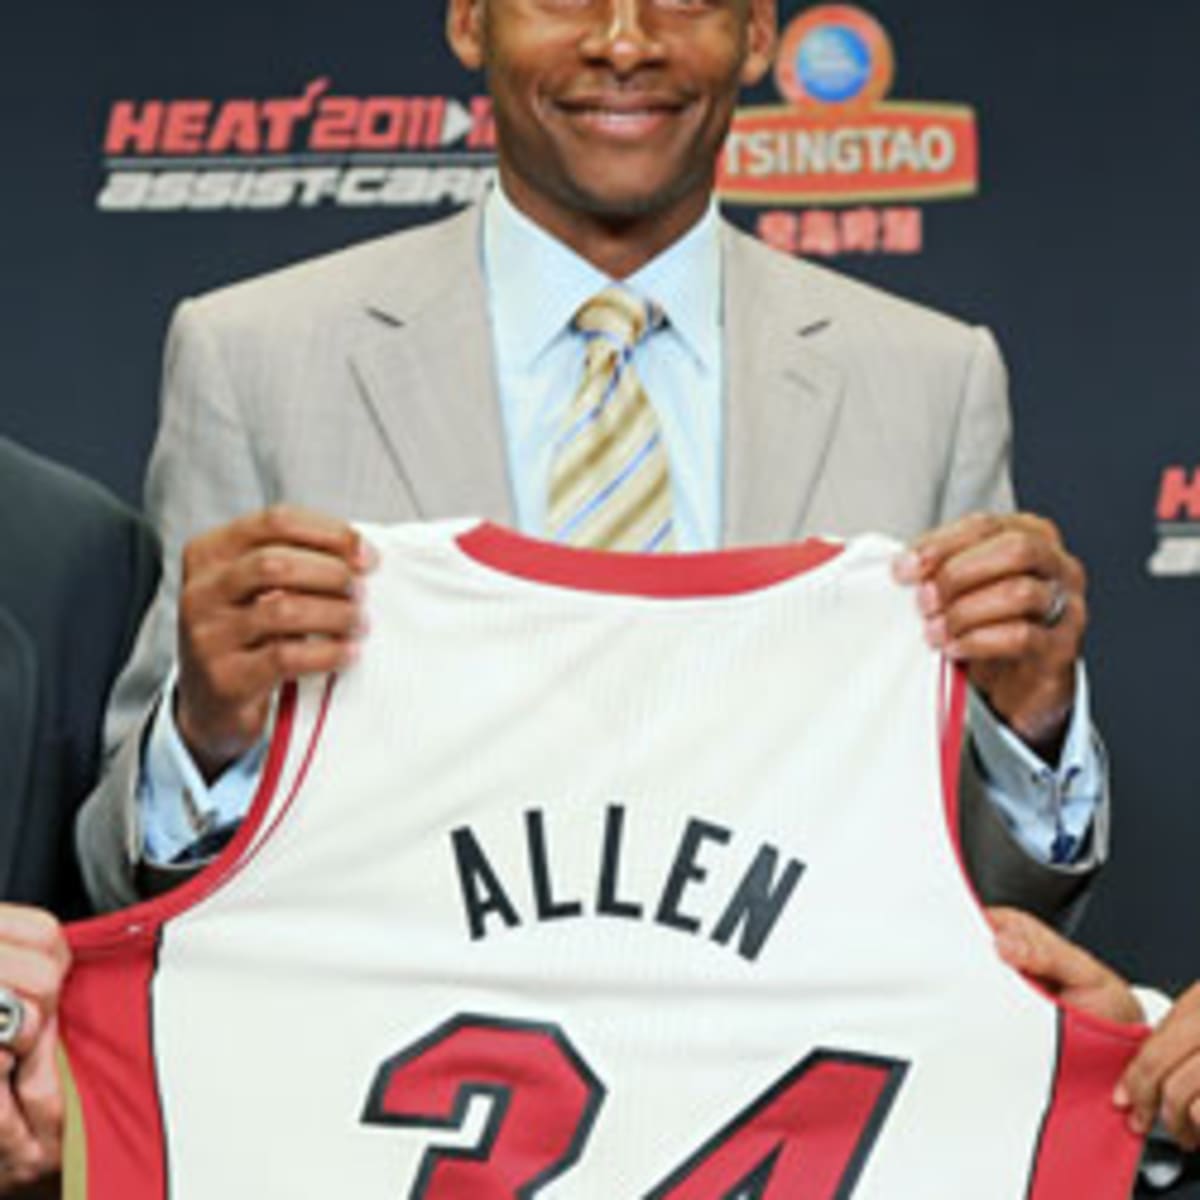 Celtics-Heat opener has Ray Allen subplot